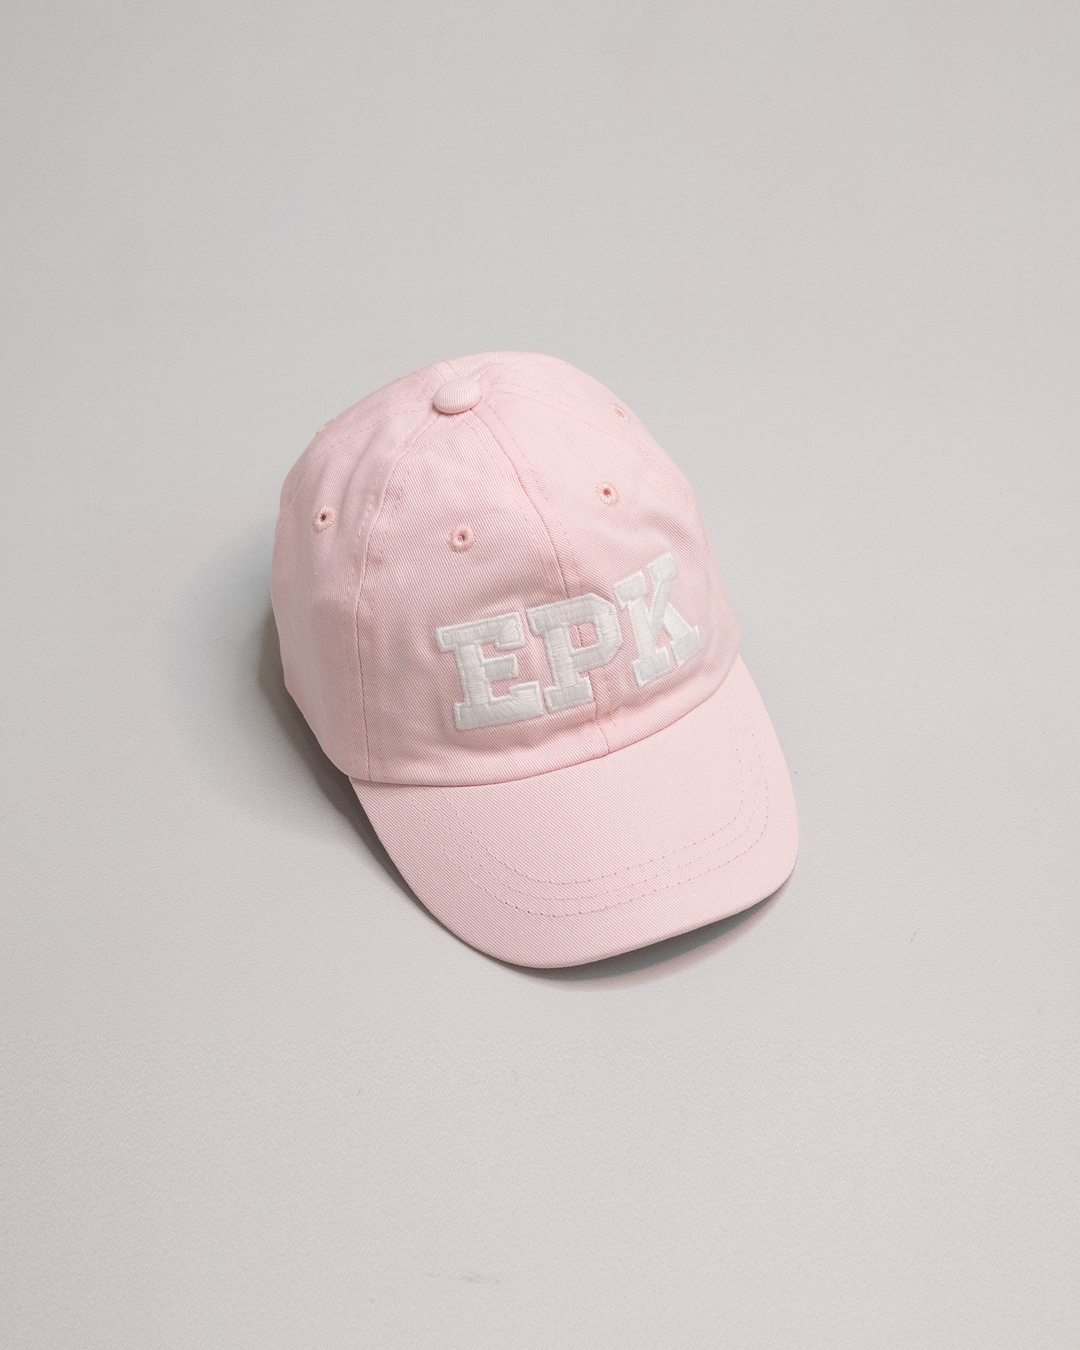 Gorra rosada con logo EPK